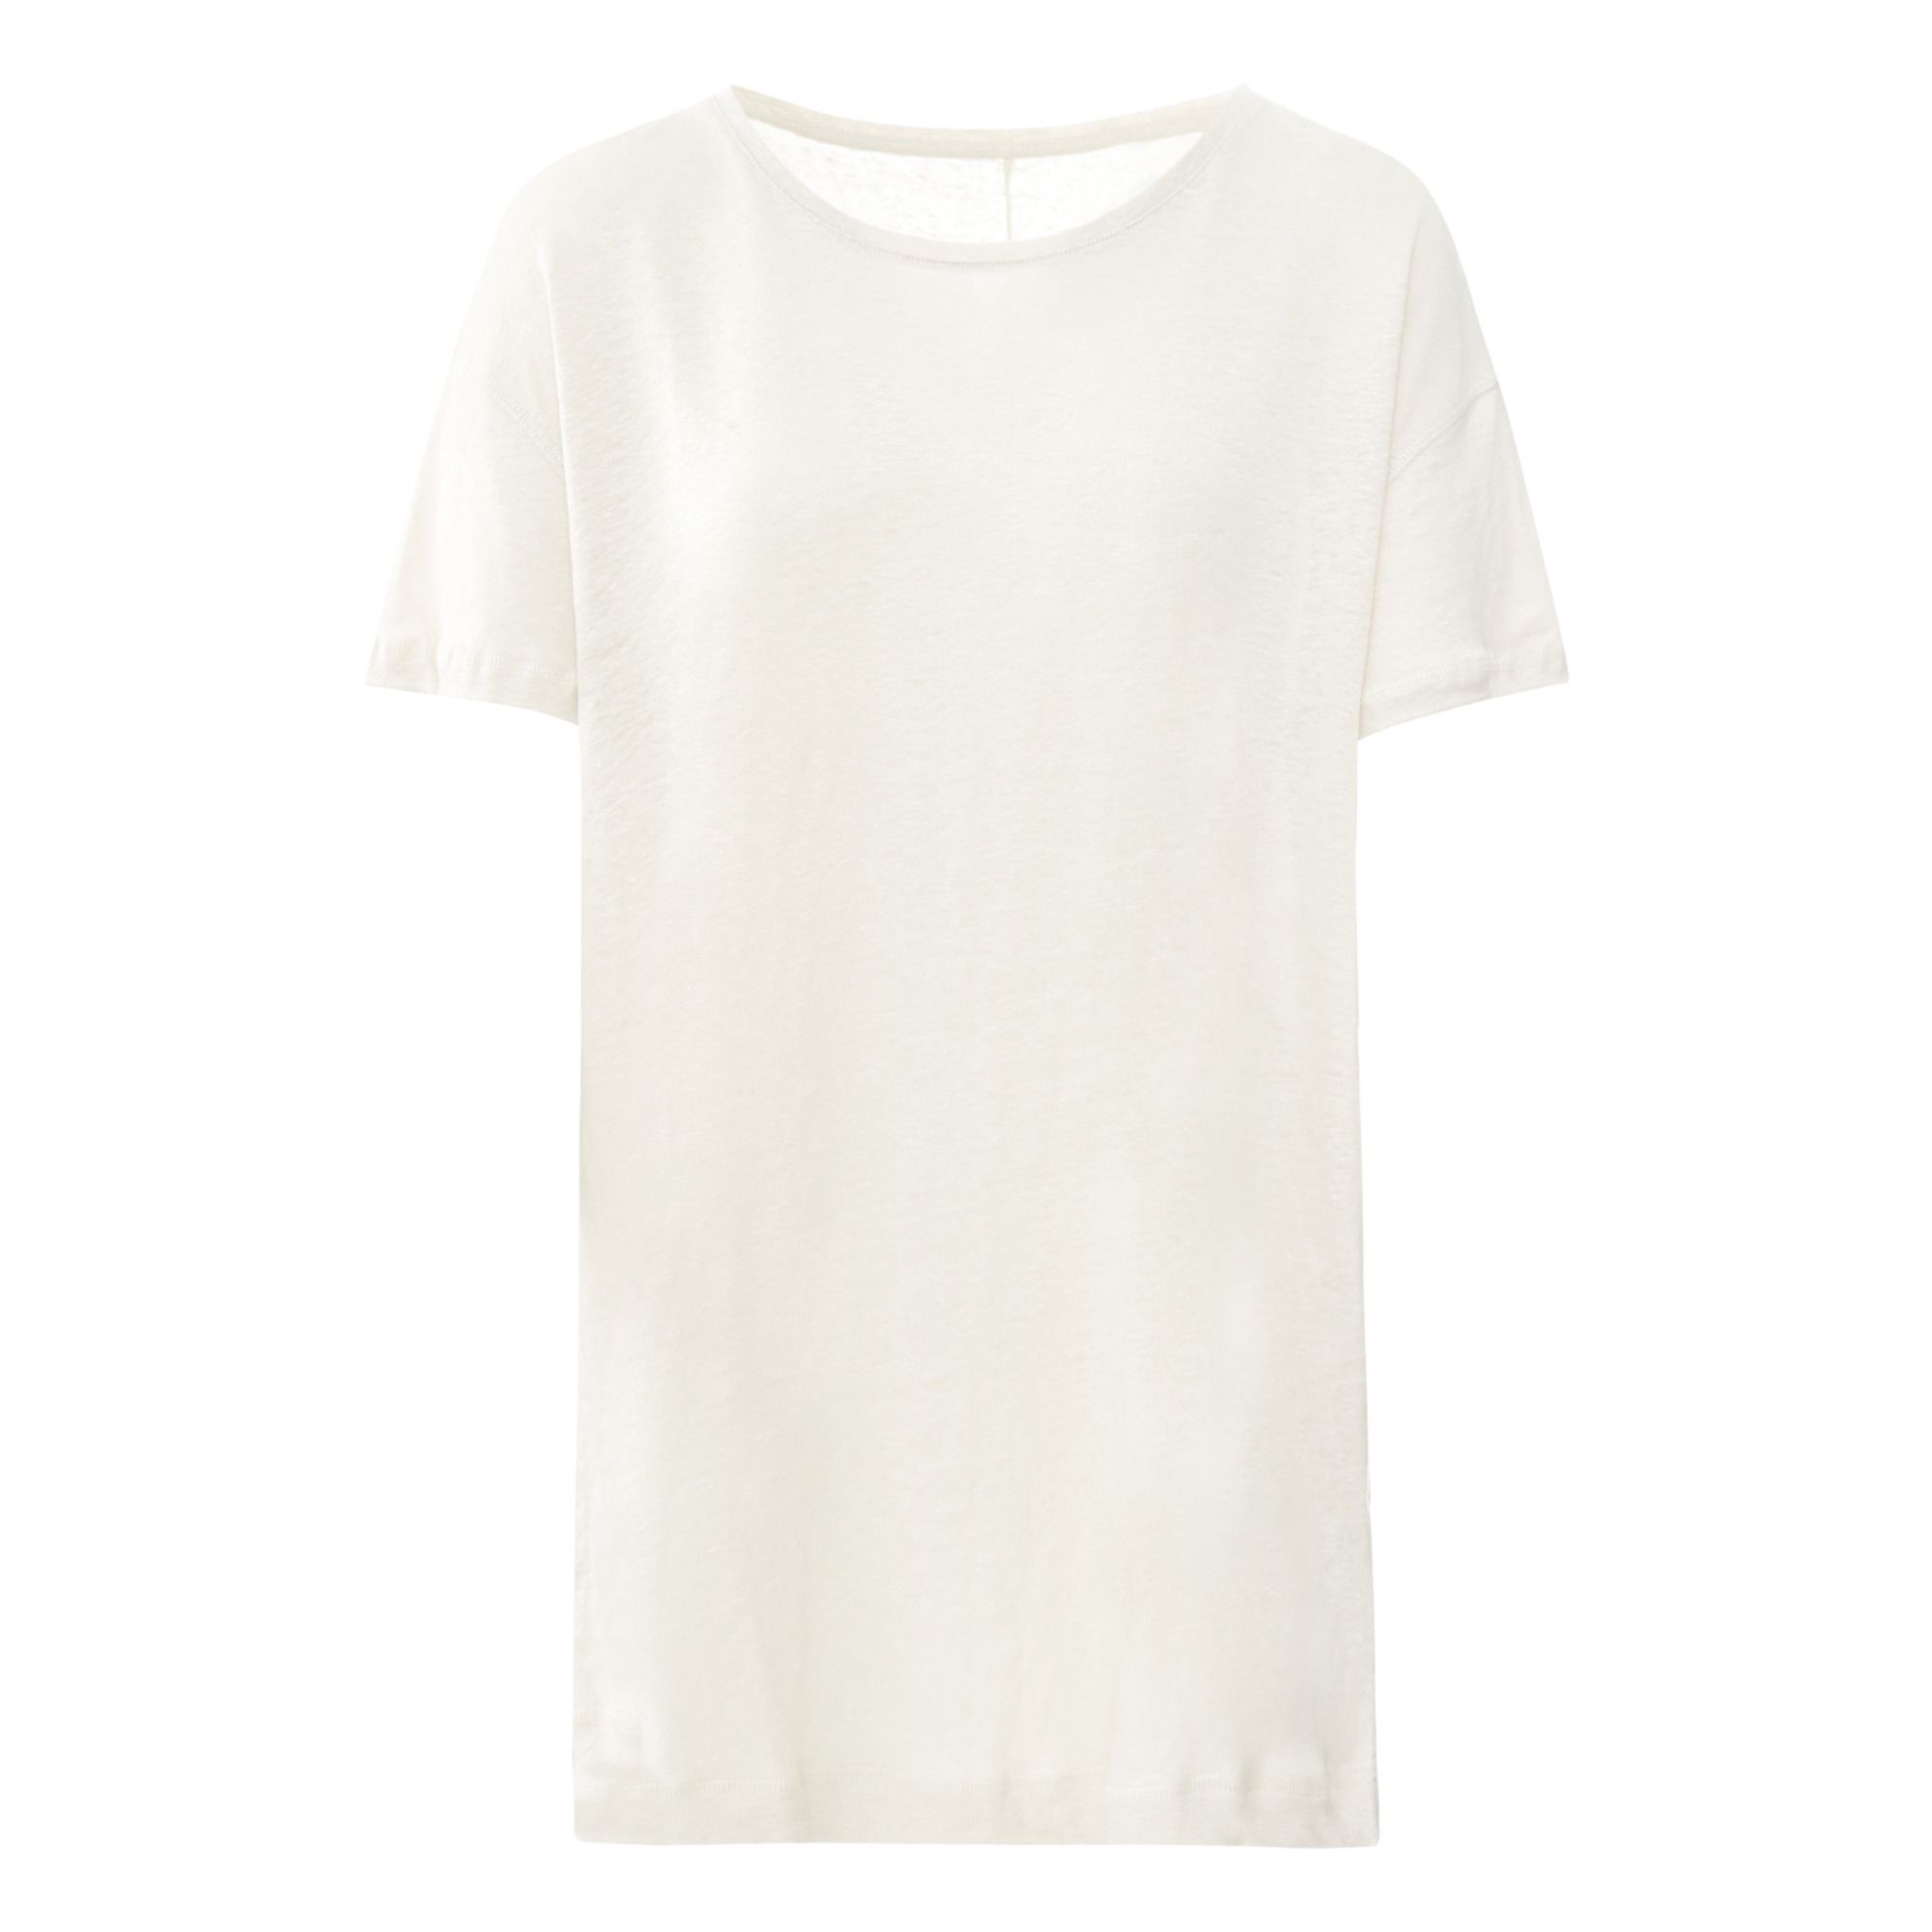 GAI+LISVA - T-Shirt Bertha - Femme - Gris